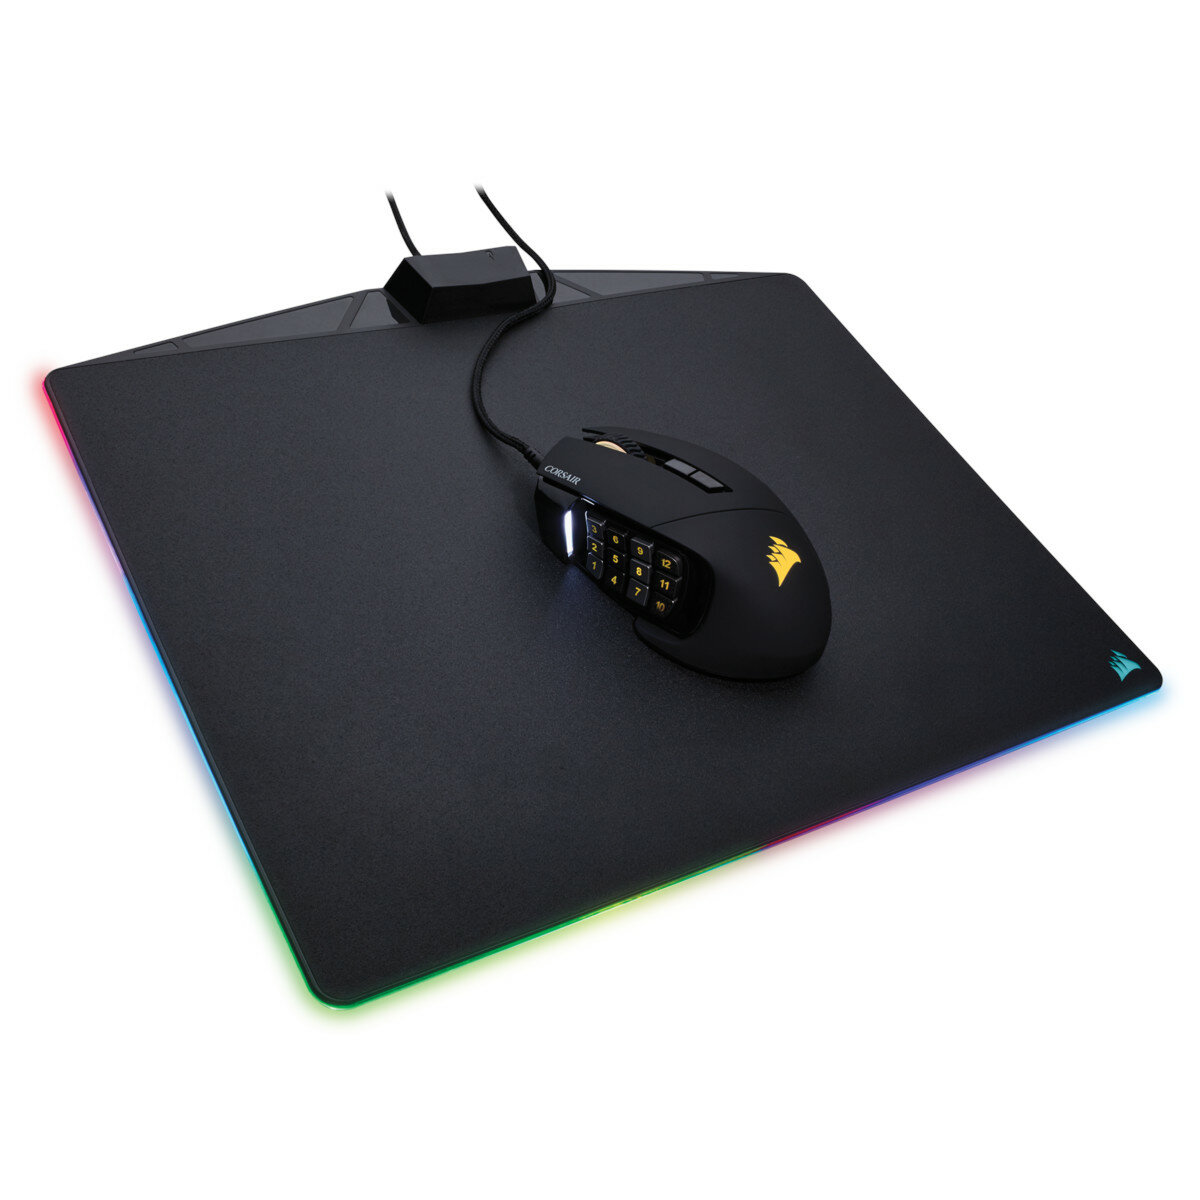 Podkładka pod mysz RGB dla graczy Corsair MM800 mysz na podkładce 